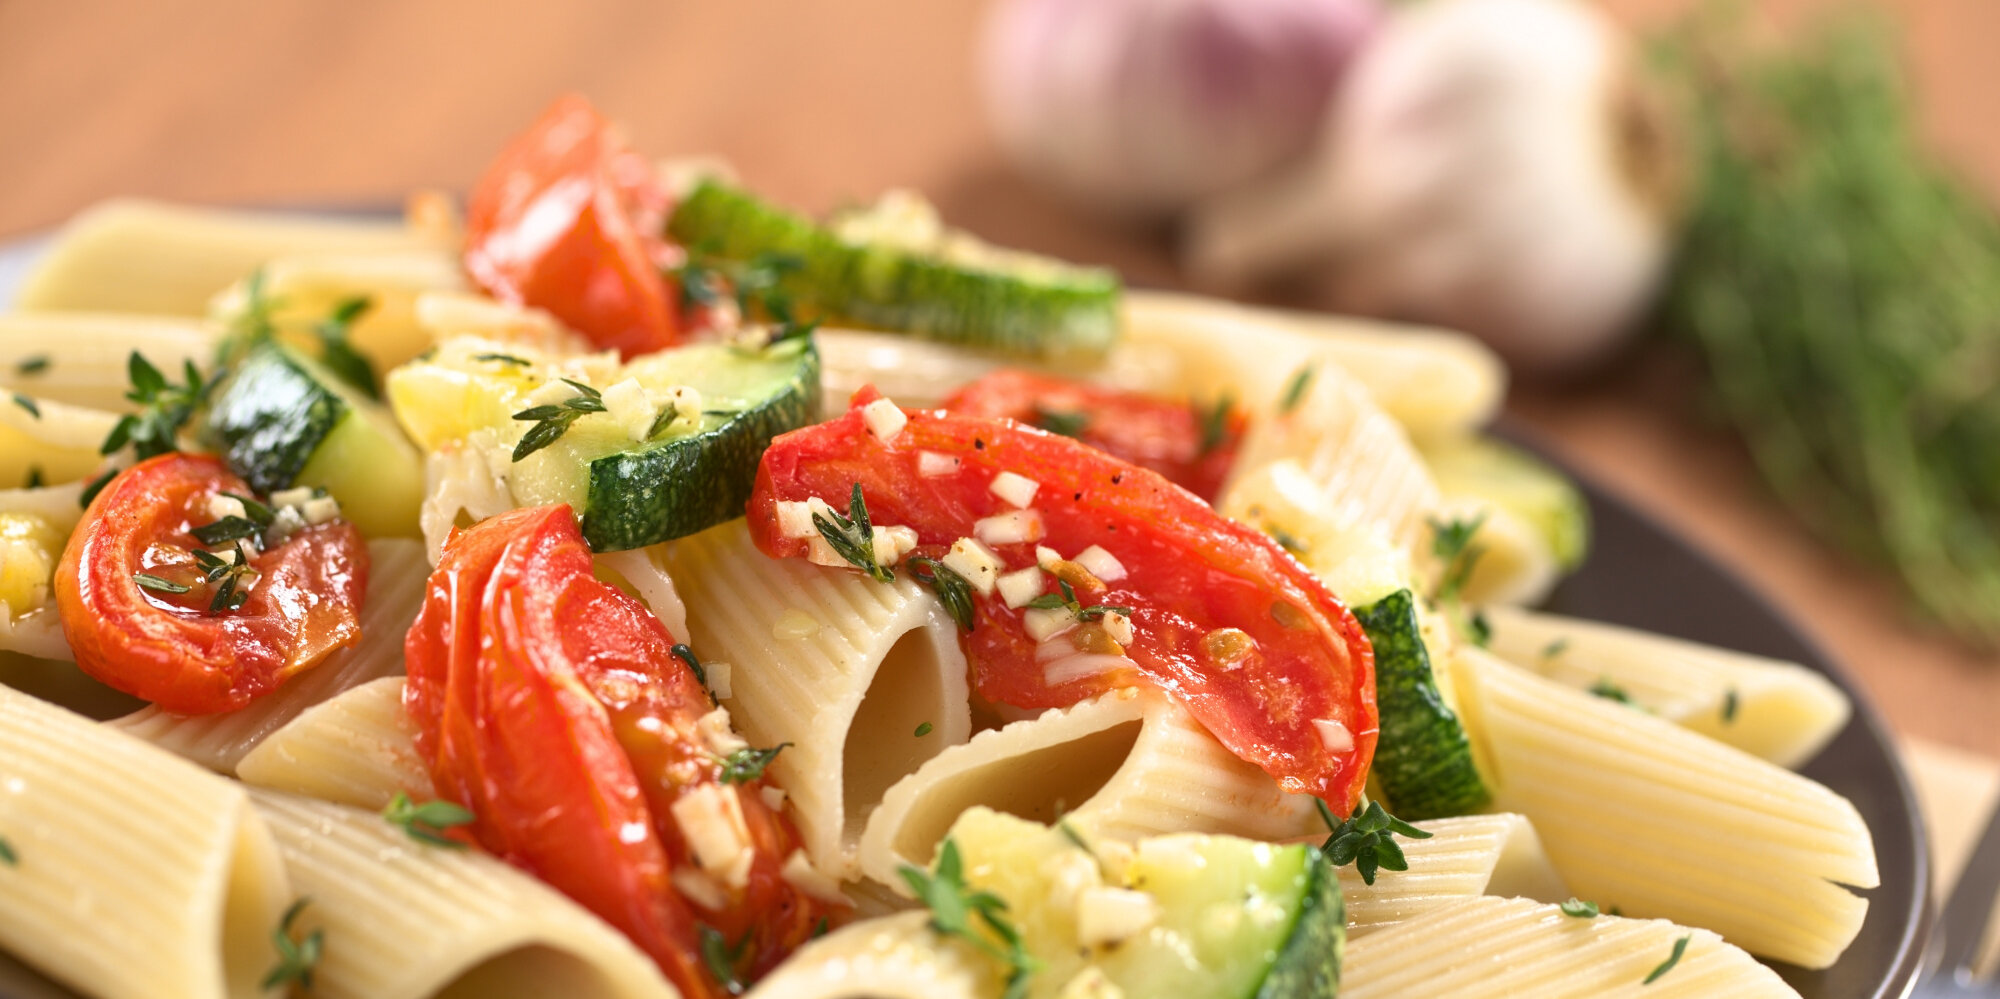 Ein Teller mit Pasta, Tomaten und Zucchini dekoriert mit frischen Kräutern.